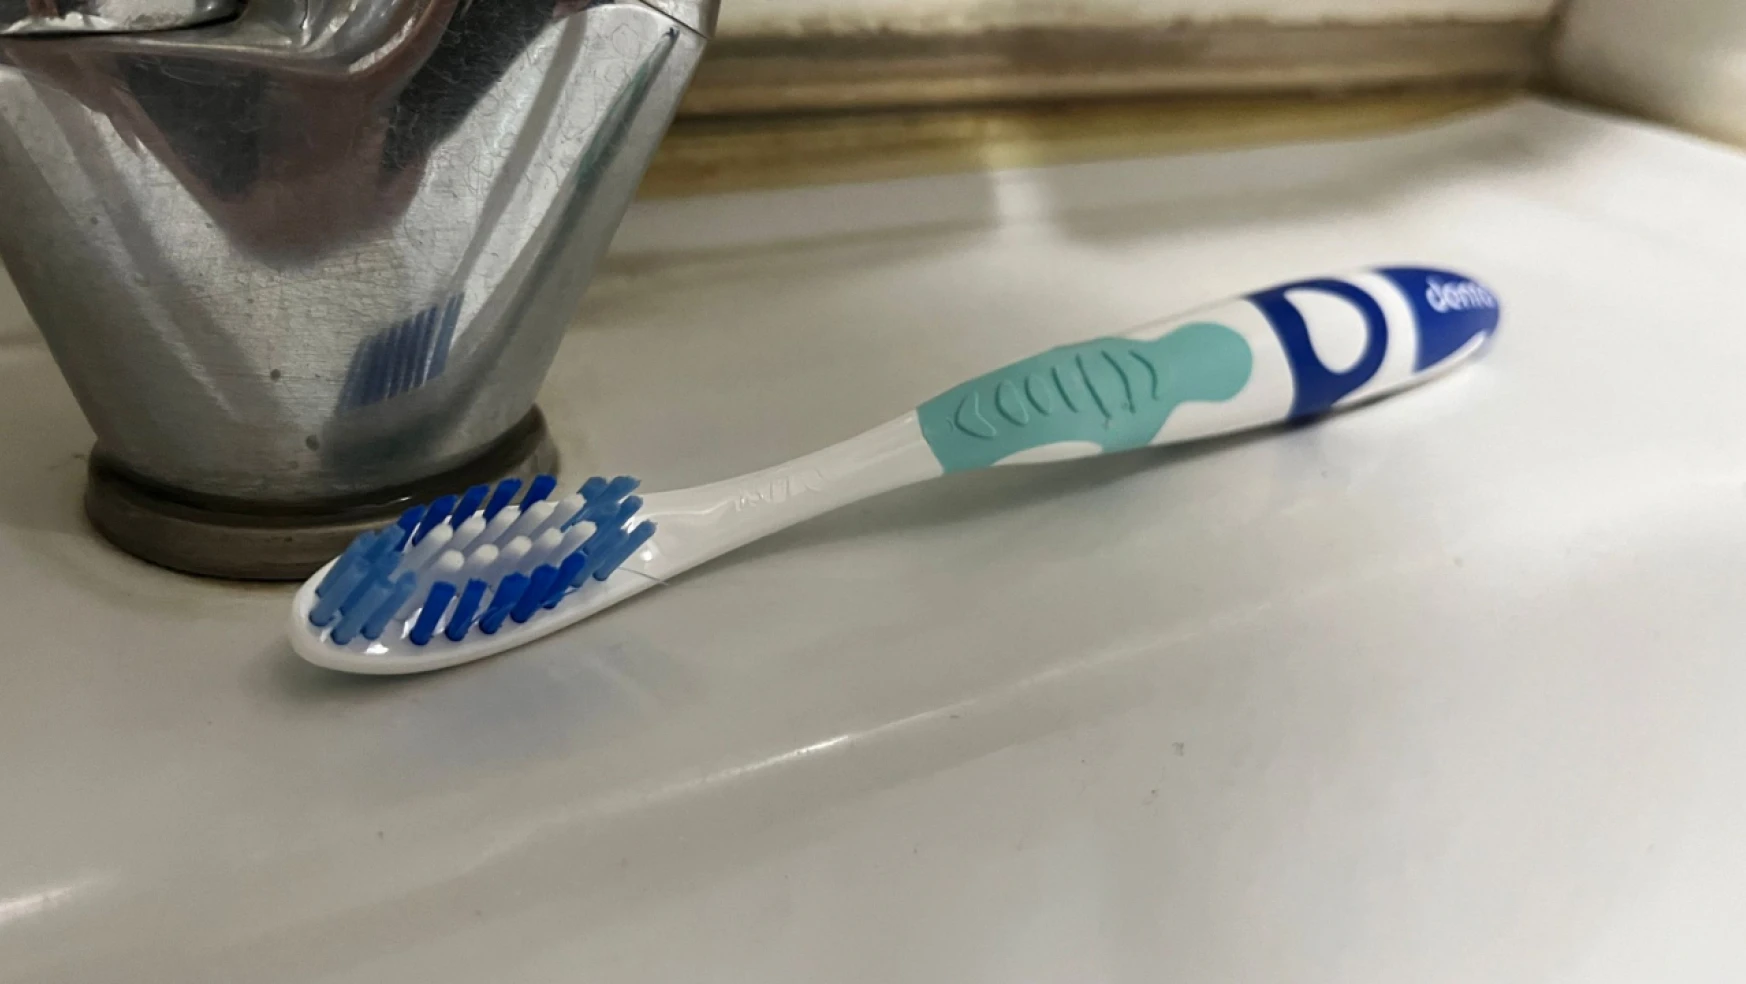 Diş fırçası ithalatındaki koruma önlemlerini gözden geçirilecek